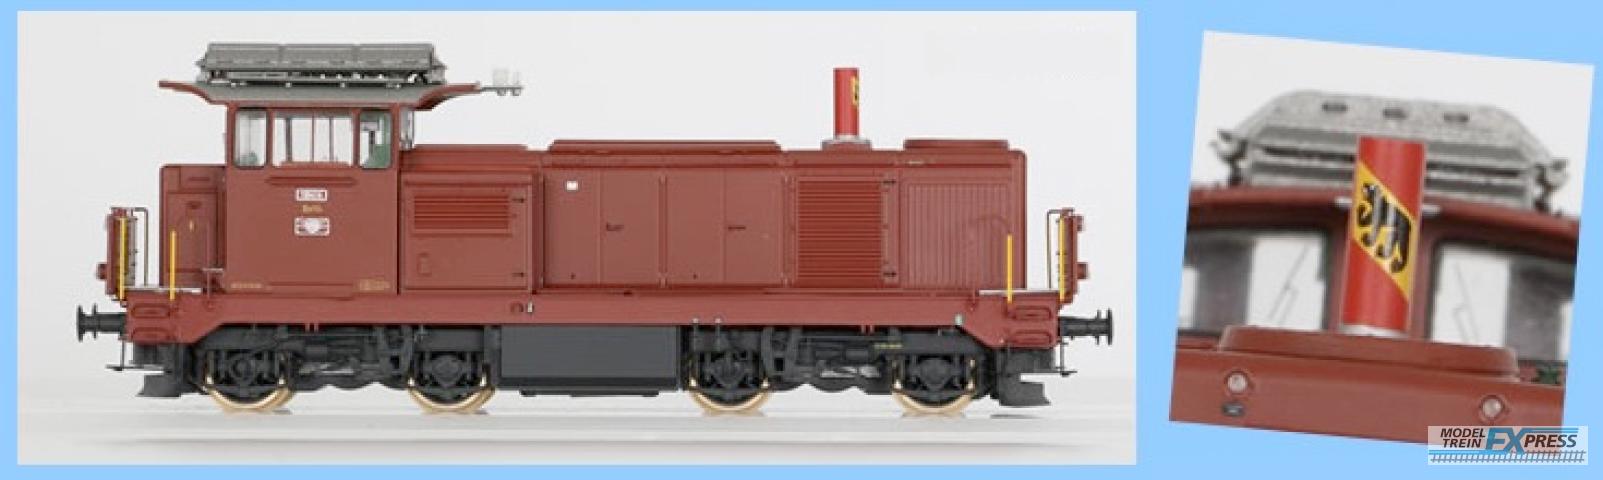 LS Models 17564 18414, bruin, met rode schoorsteen, blazoen stadt Bern  /  Ep. IVB  /  SBB  /  HO  /  AC  /  1 P.